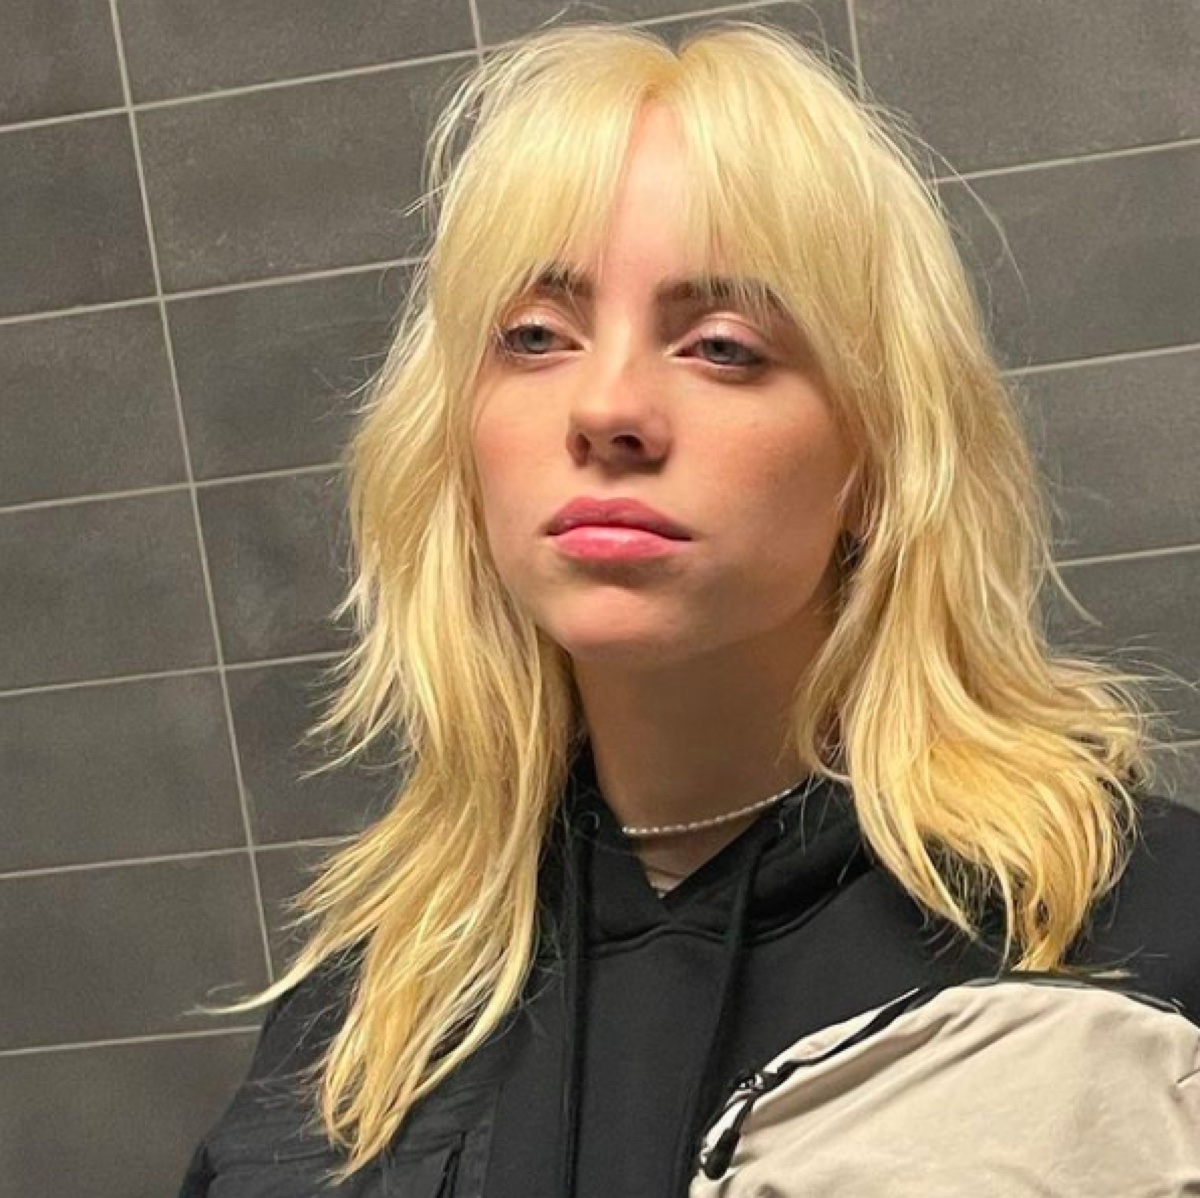 Billie Eilish with blonde hair on Instagram